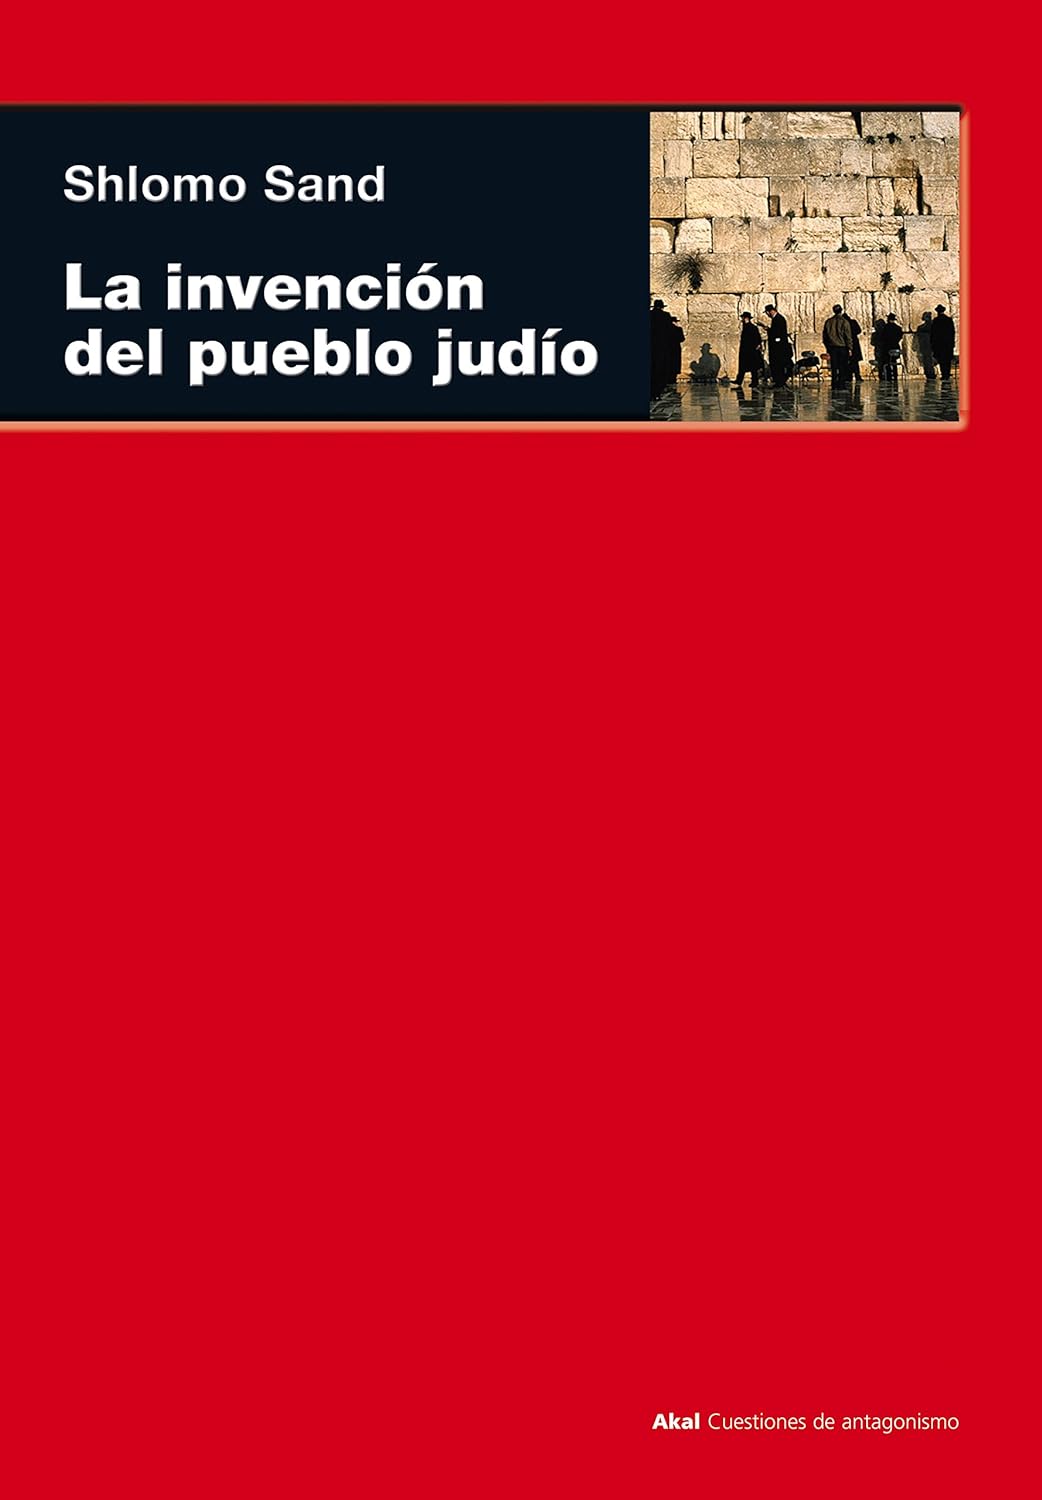 Shlomo Sand: La invención del pueblo judío (Español language, 2010, Akal)